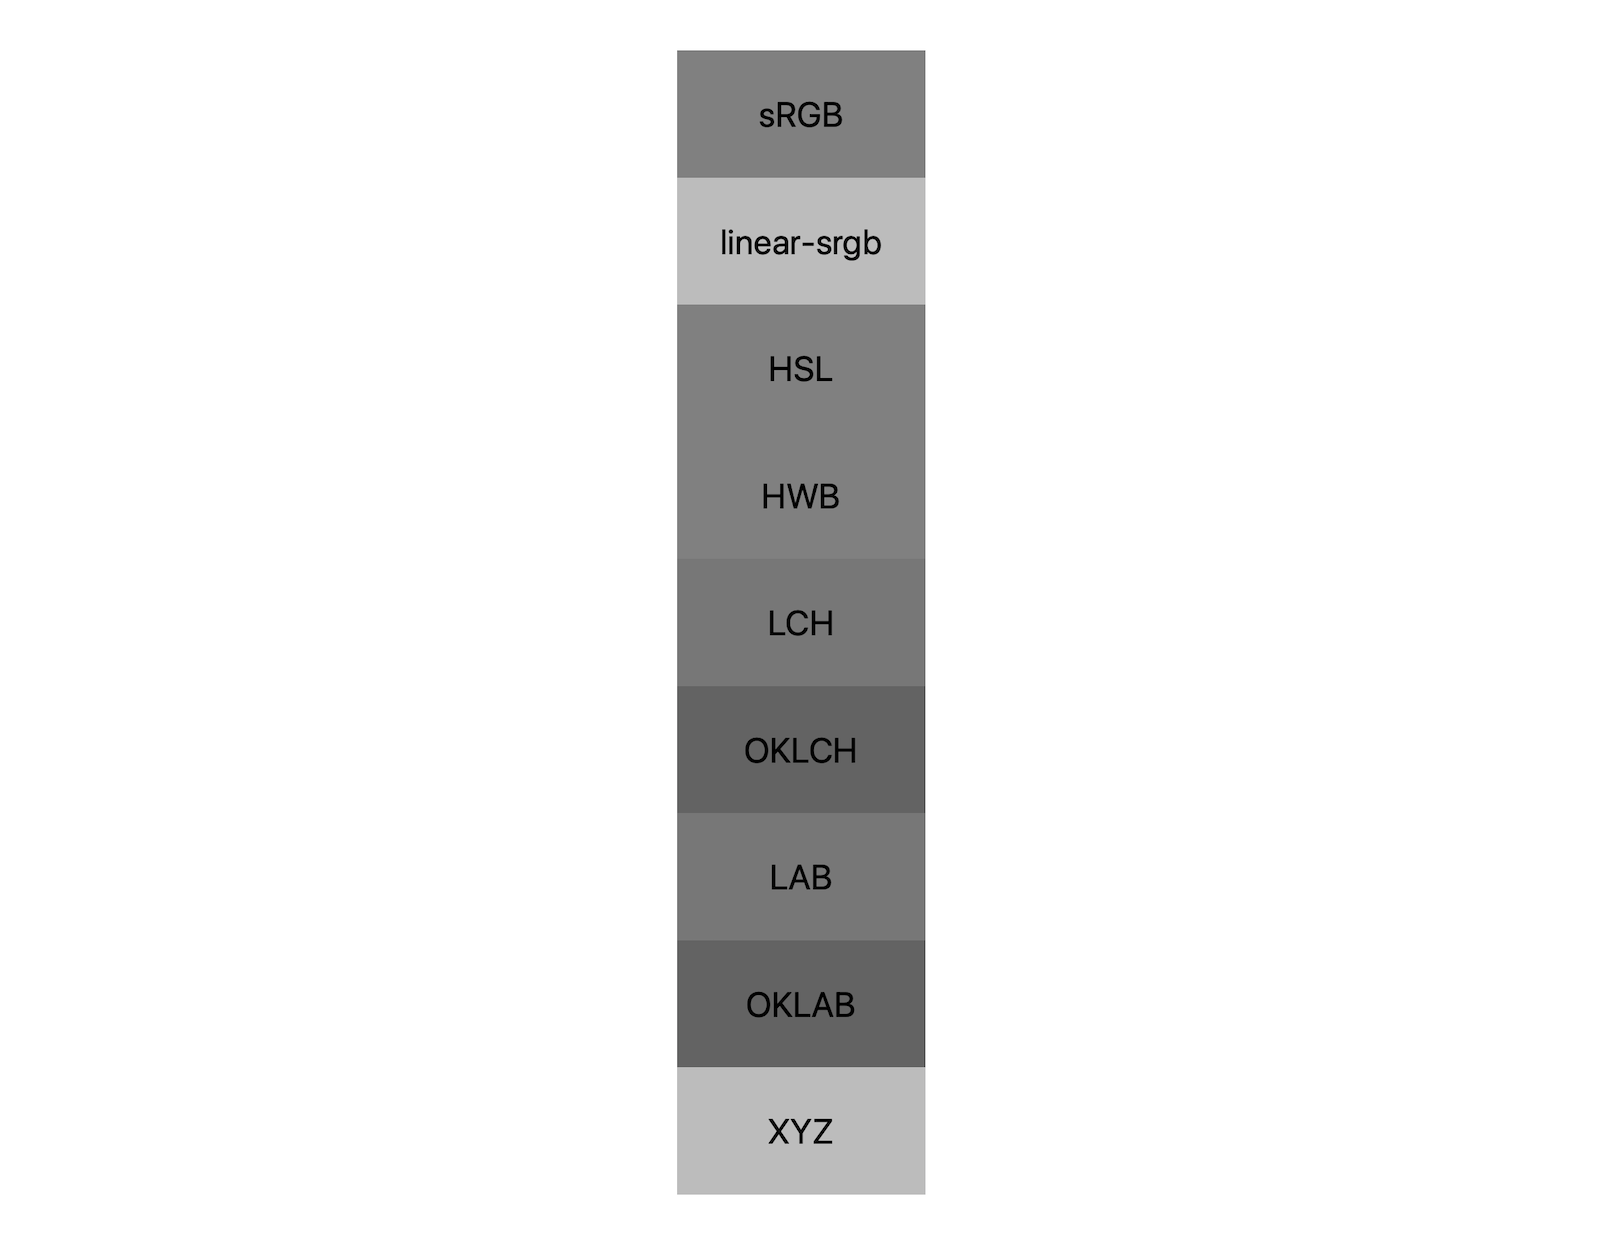 7 个颜色空间（srgb、linear-srgb、lch、oklch、lab、oklab、xyz）分别显示了黑白混合的结果。大约会显示 5 种不同的色调，表明每种颜色空间甚至会以不同的方式混合到灰色。